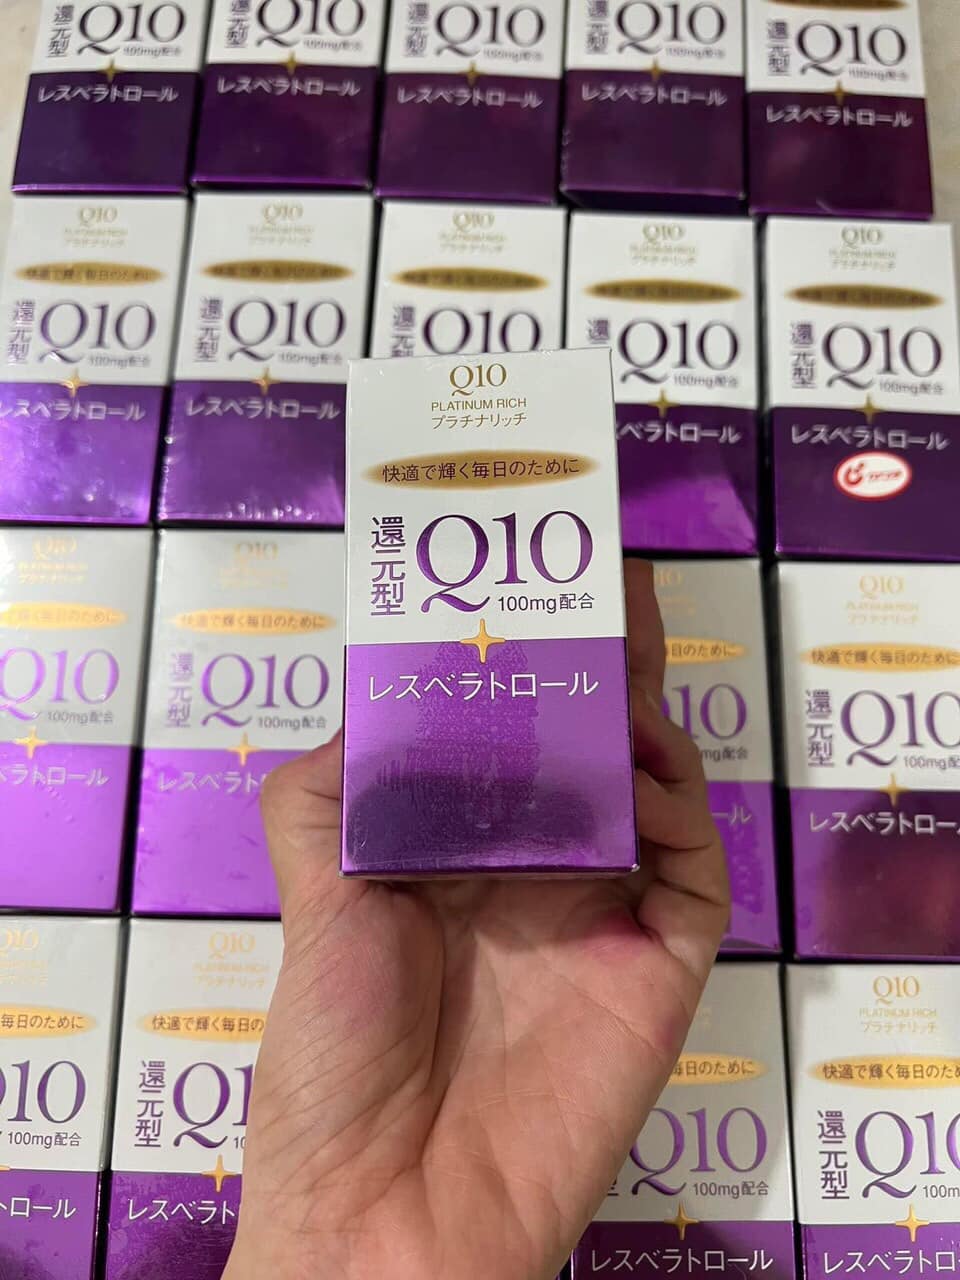 Q10 Shiseido Platinum Rich 60 Viên